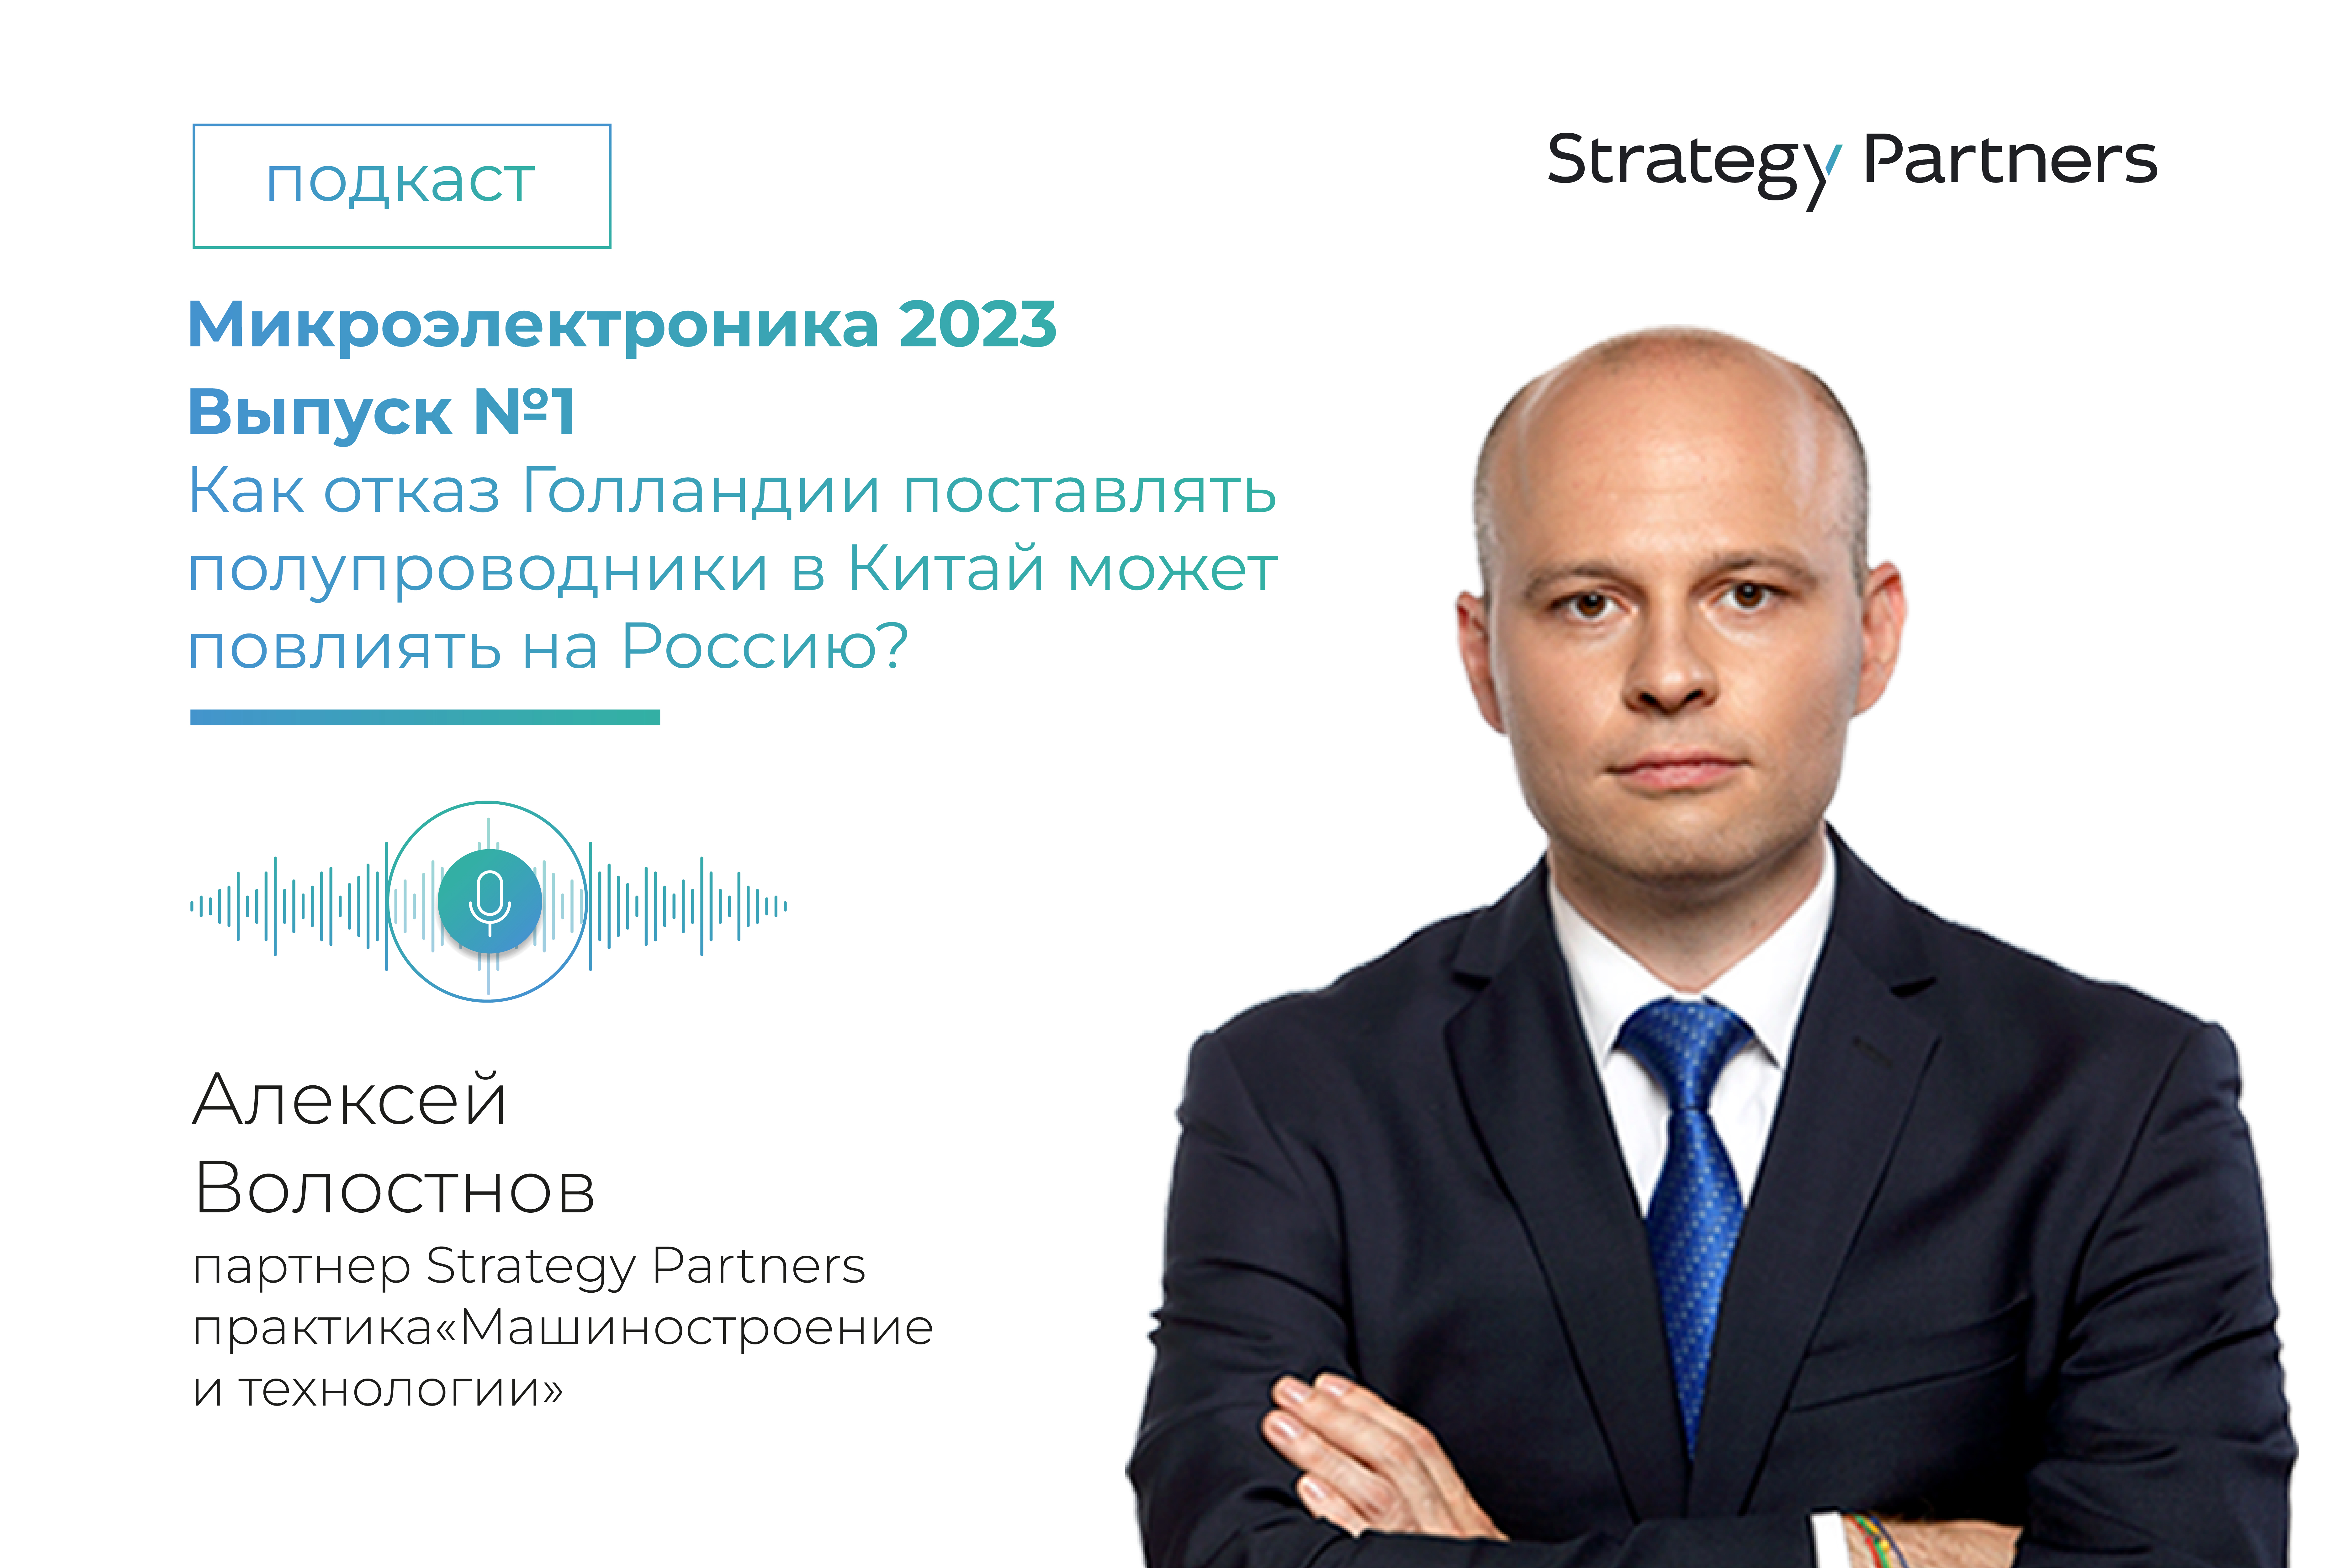 Запуск подкаста «Микроэлектроника-2023» с Алексеем Волостновым, партнером практики «Машиностроение и технологии»